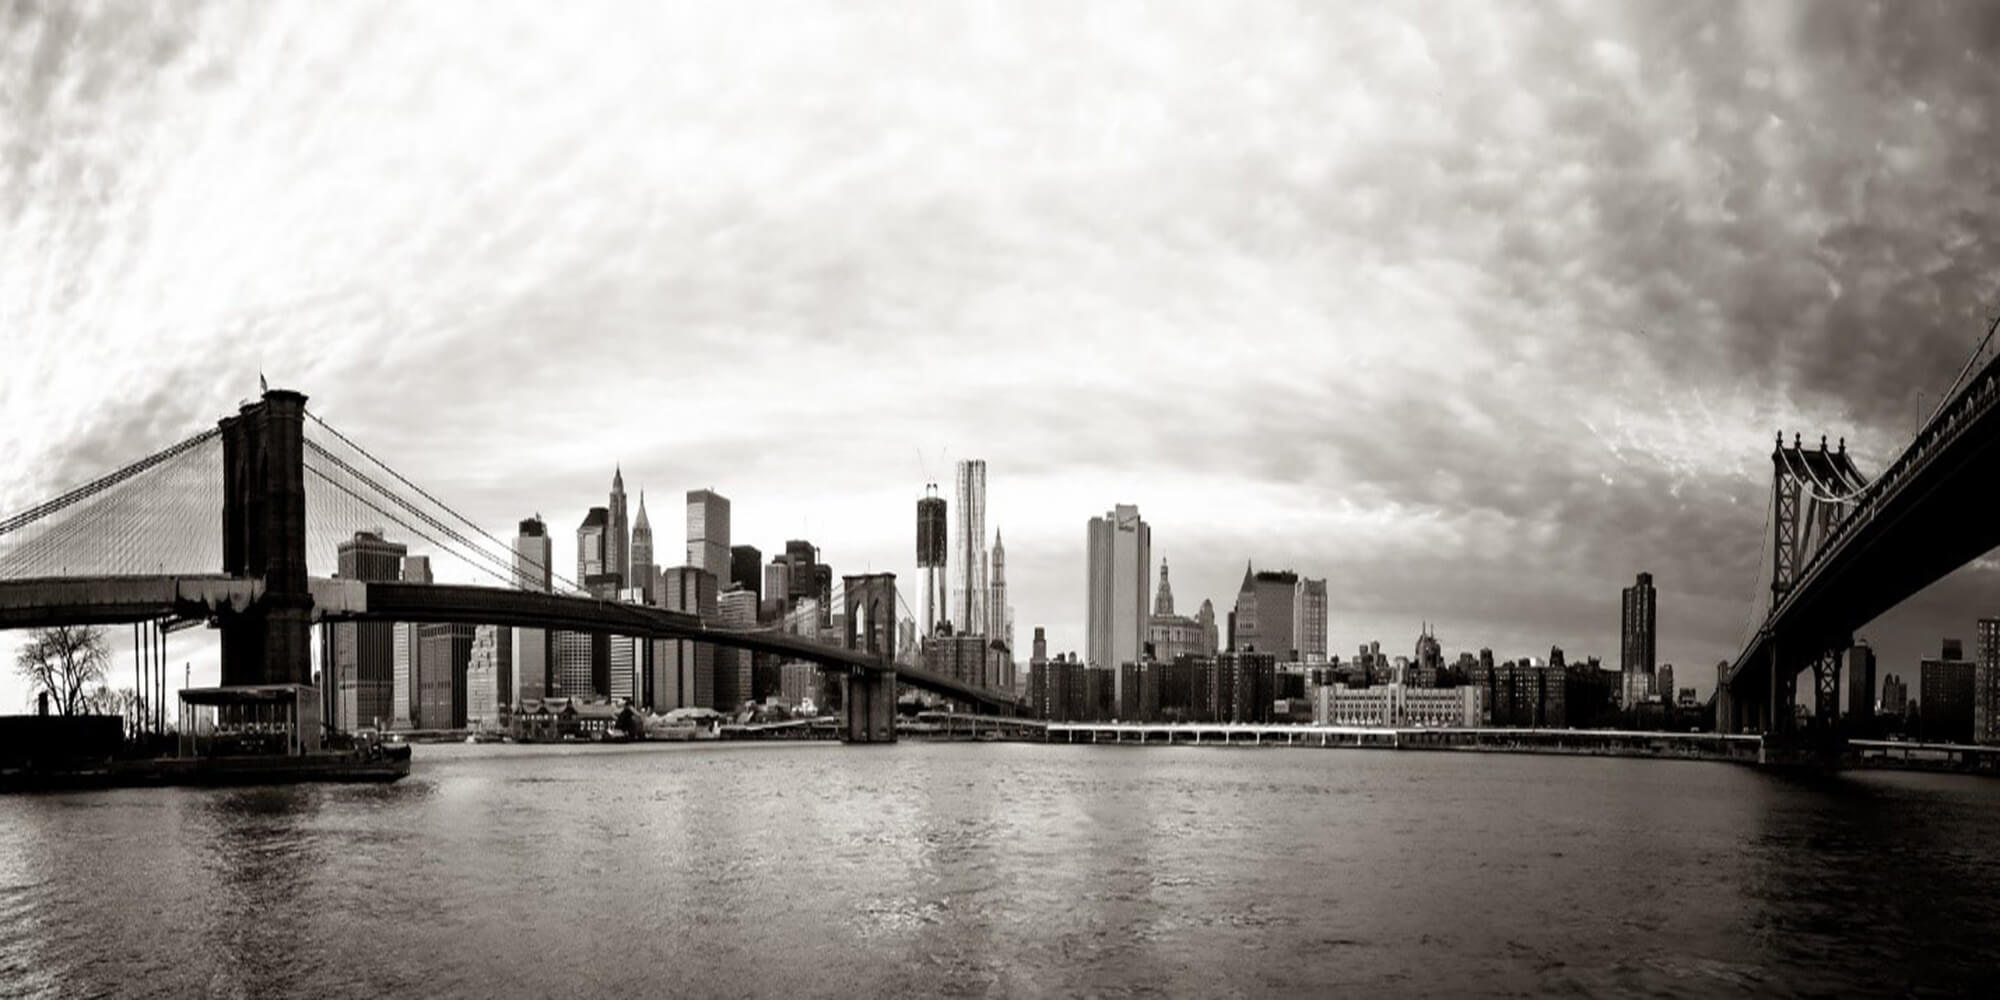 City of New York, NY - Disparity Study